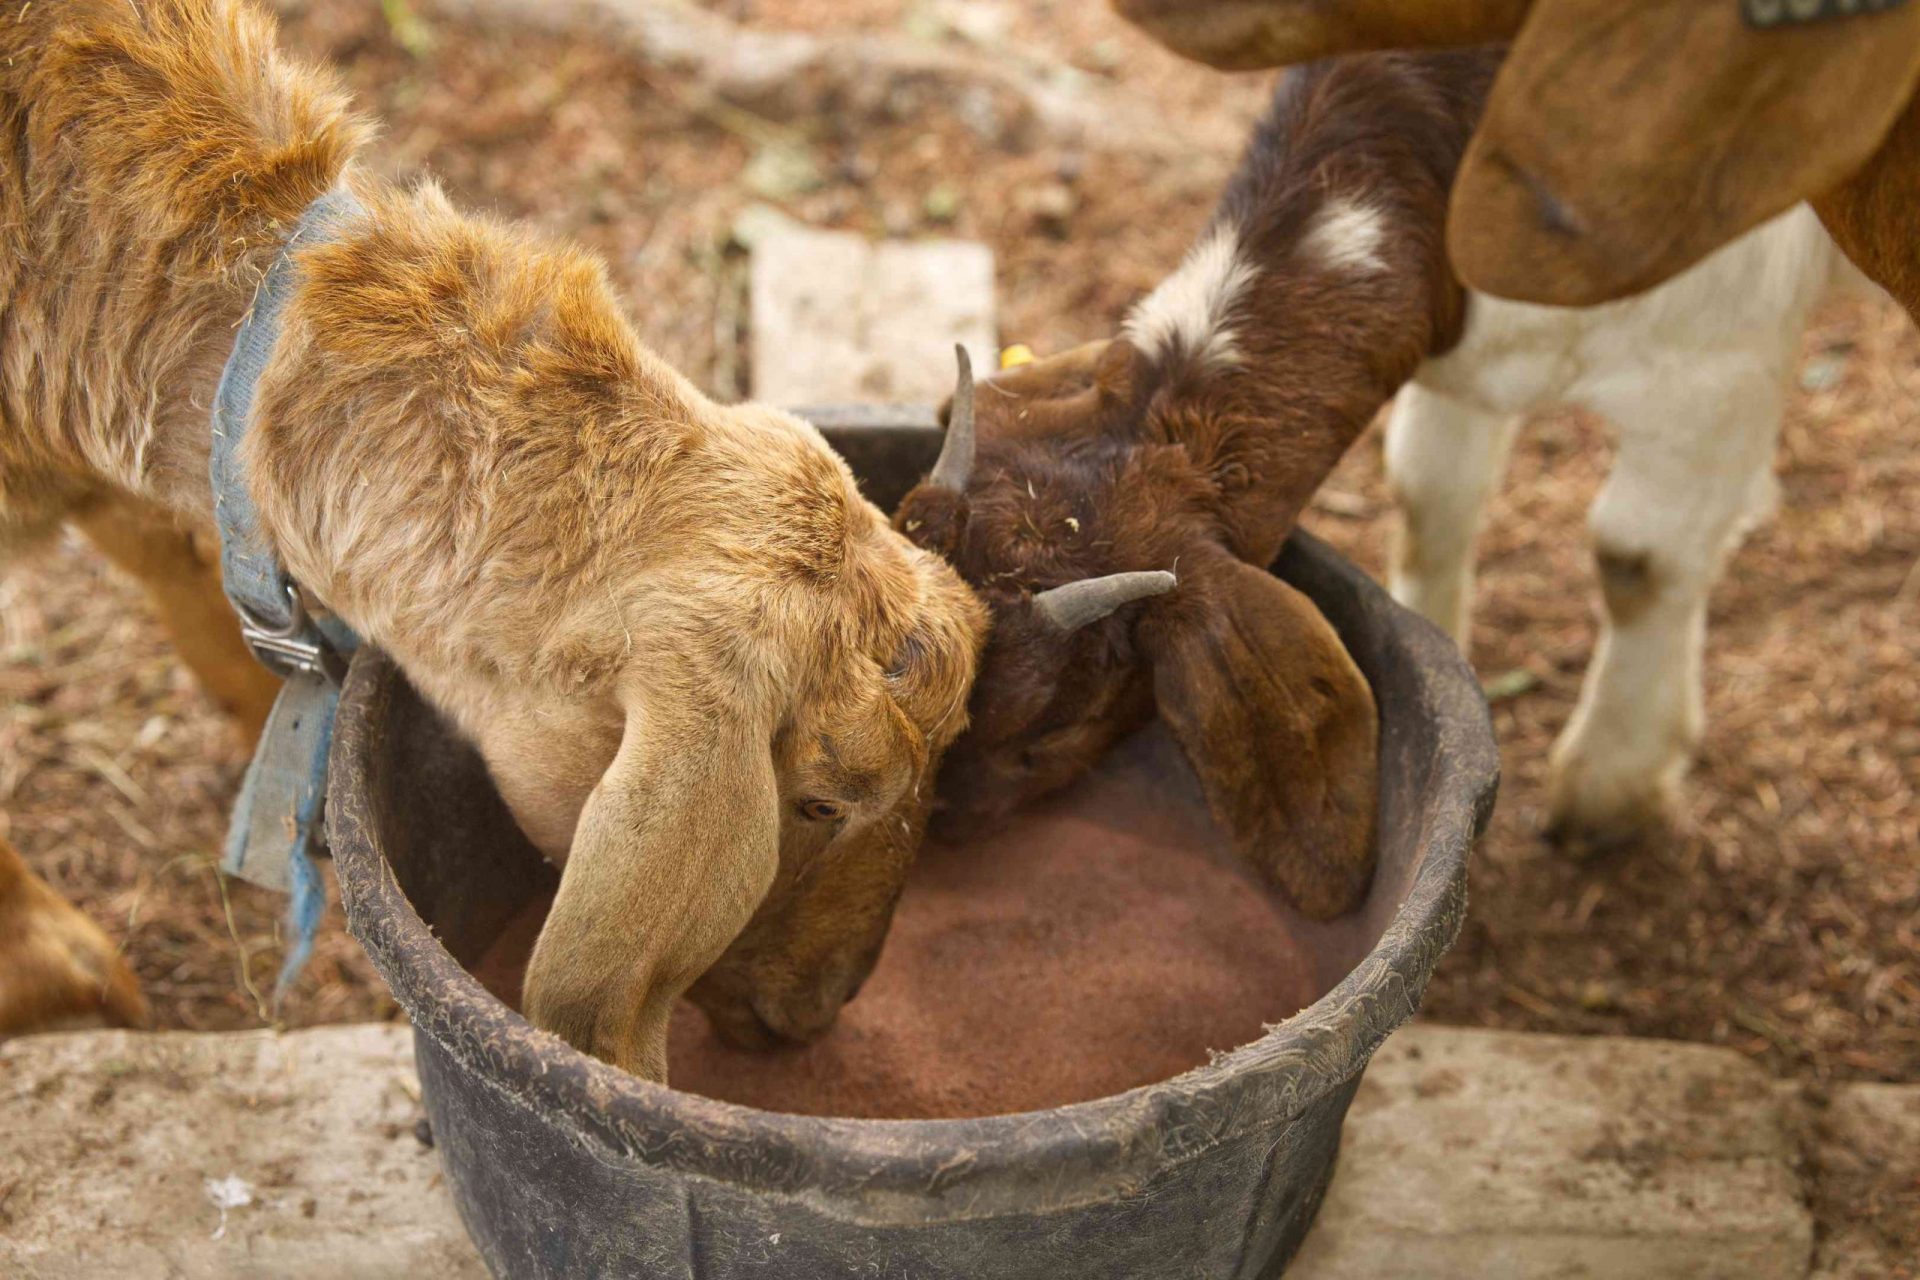 Las cabras de color marrón y fuego comen suplementos minerales de un cuenco de granja polvoriento